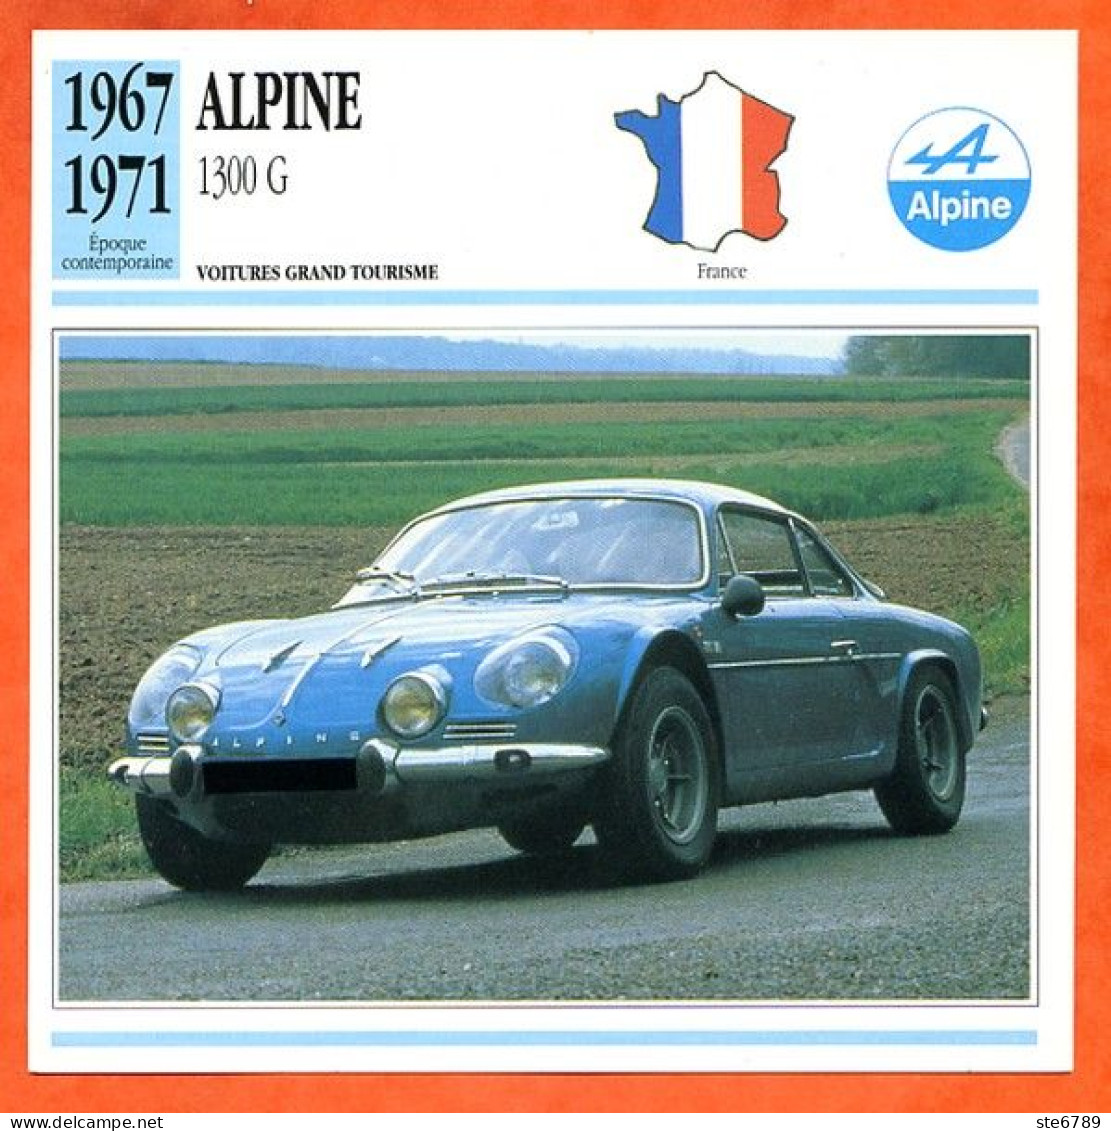 ALPINE 1300 G 1967  Voiture Grand Tourisme France Fiche Technique Automobile - Auto's